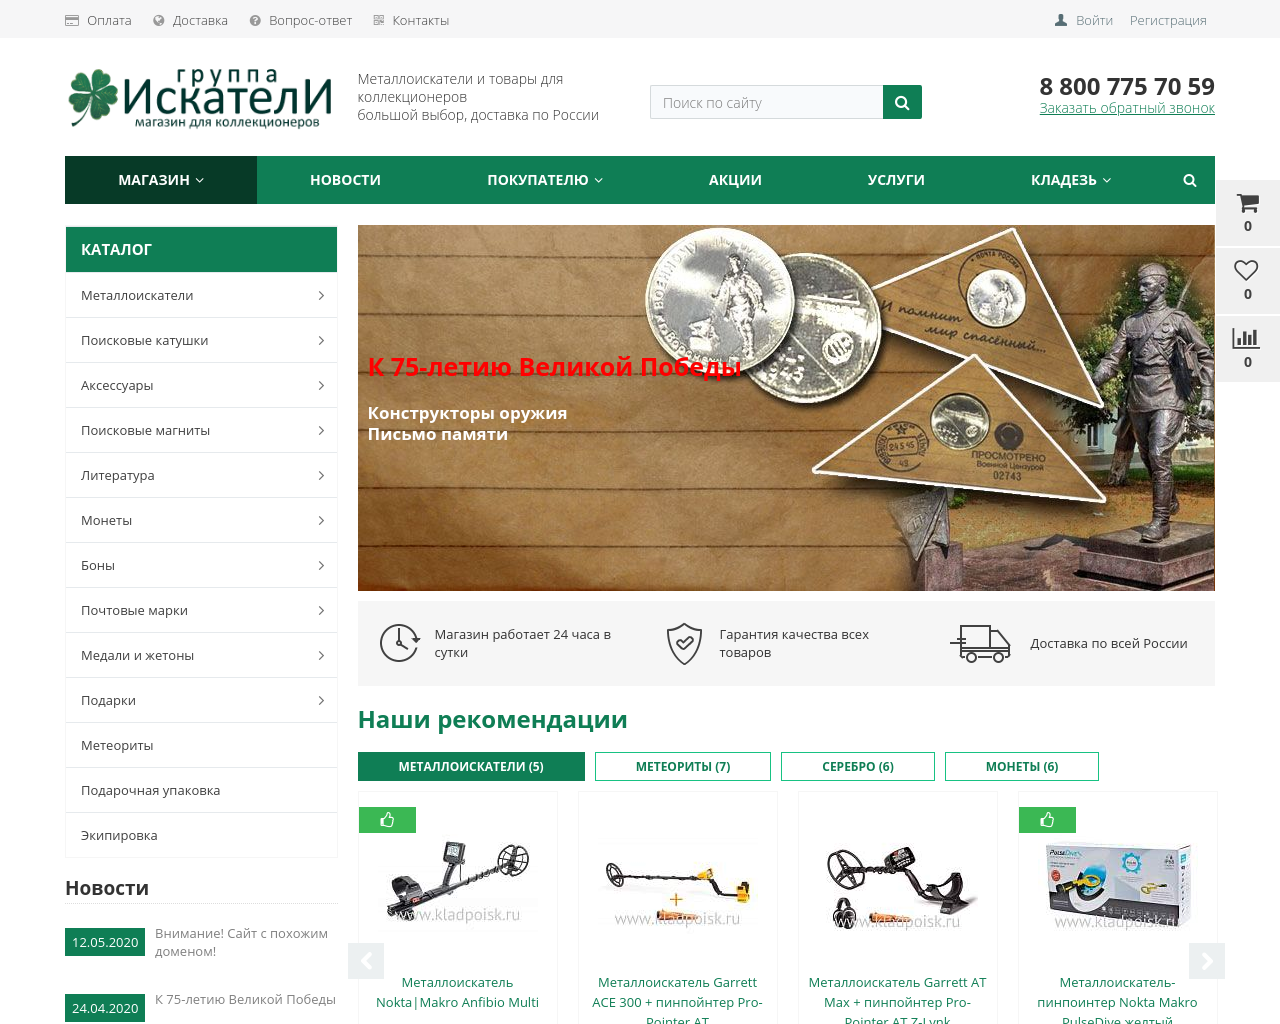 Изображение сайта kladpoisk.ru в разрешении 1280x1024